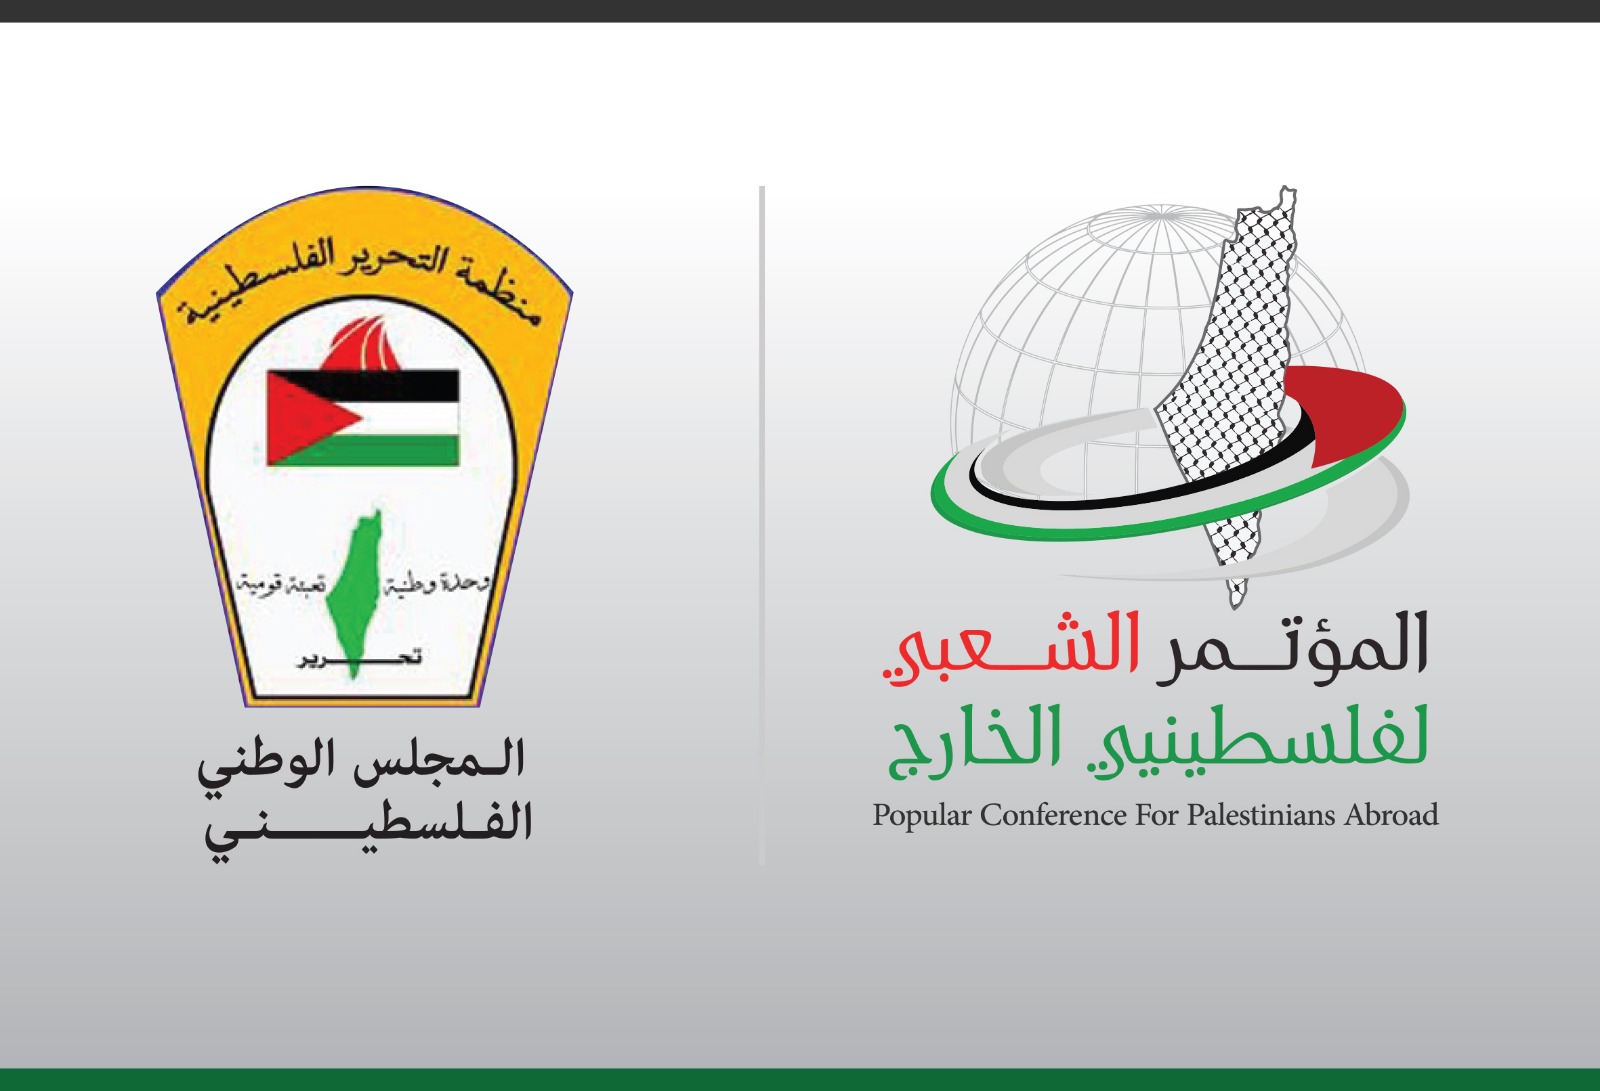 بيان صحفي صادر عن الهيئة العامة للمؤتمر الشعبي حول دعوة المجلس الوطني الفلسطيني للإنعقاد